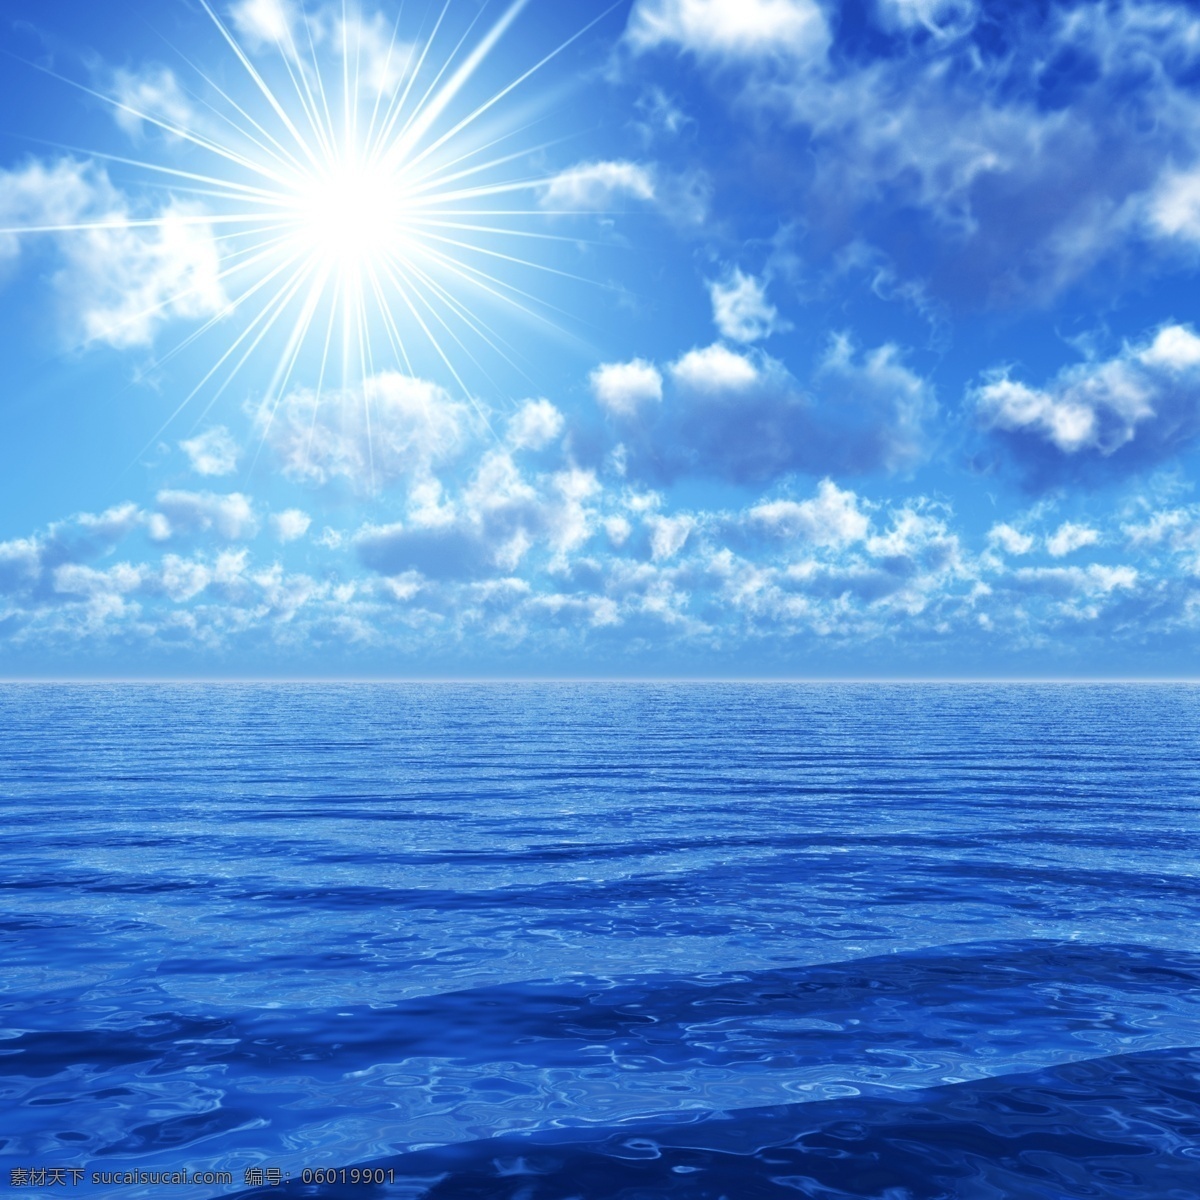 风景 海上风景 蔚蓝的海 天空 蓝天 白云 辽阔 蓝天大海 海洋海边 太阳 阳光 自然景观 蓝色